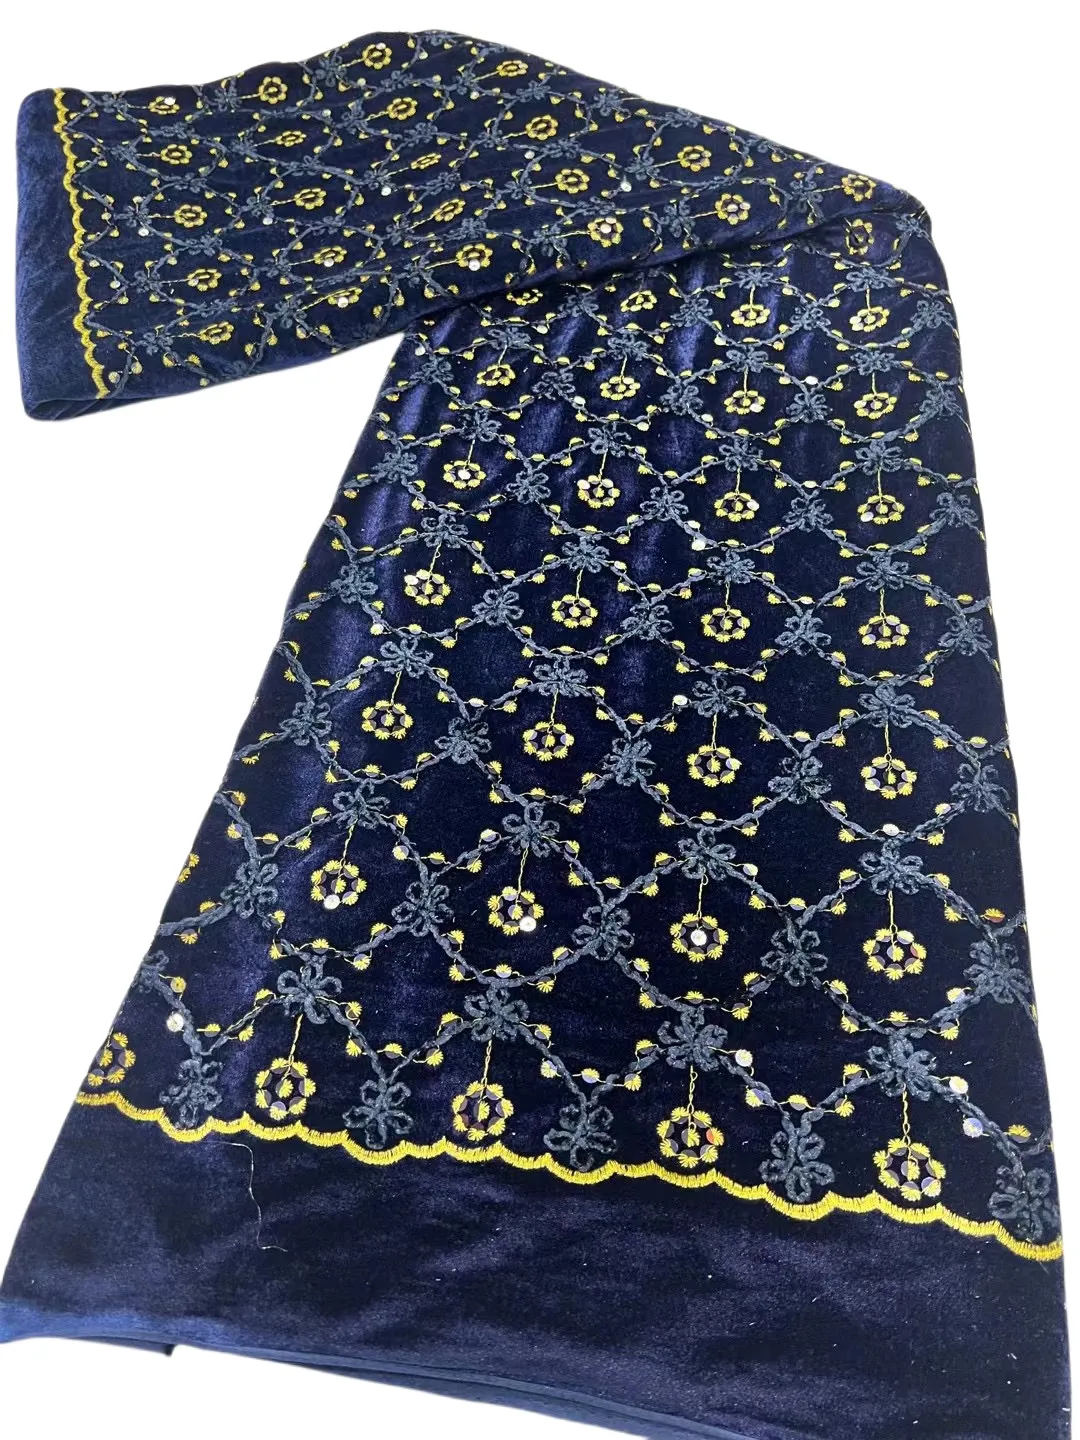 Pano de algodão do bordado 5 jardas de laços de vara de vara de vara de vara de feminino nigeriano festas de aniversário vestuário têxtil craft dentelle feminino africano feminino 2023 novo yq-8145